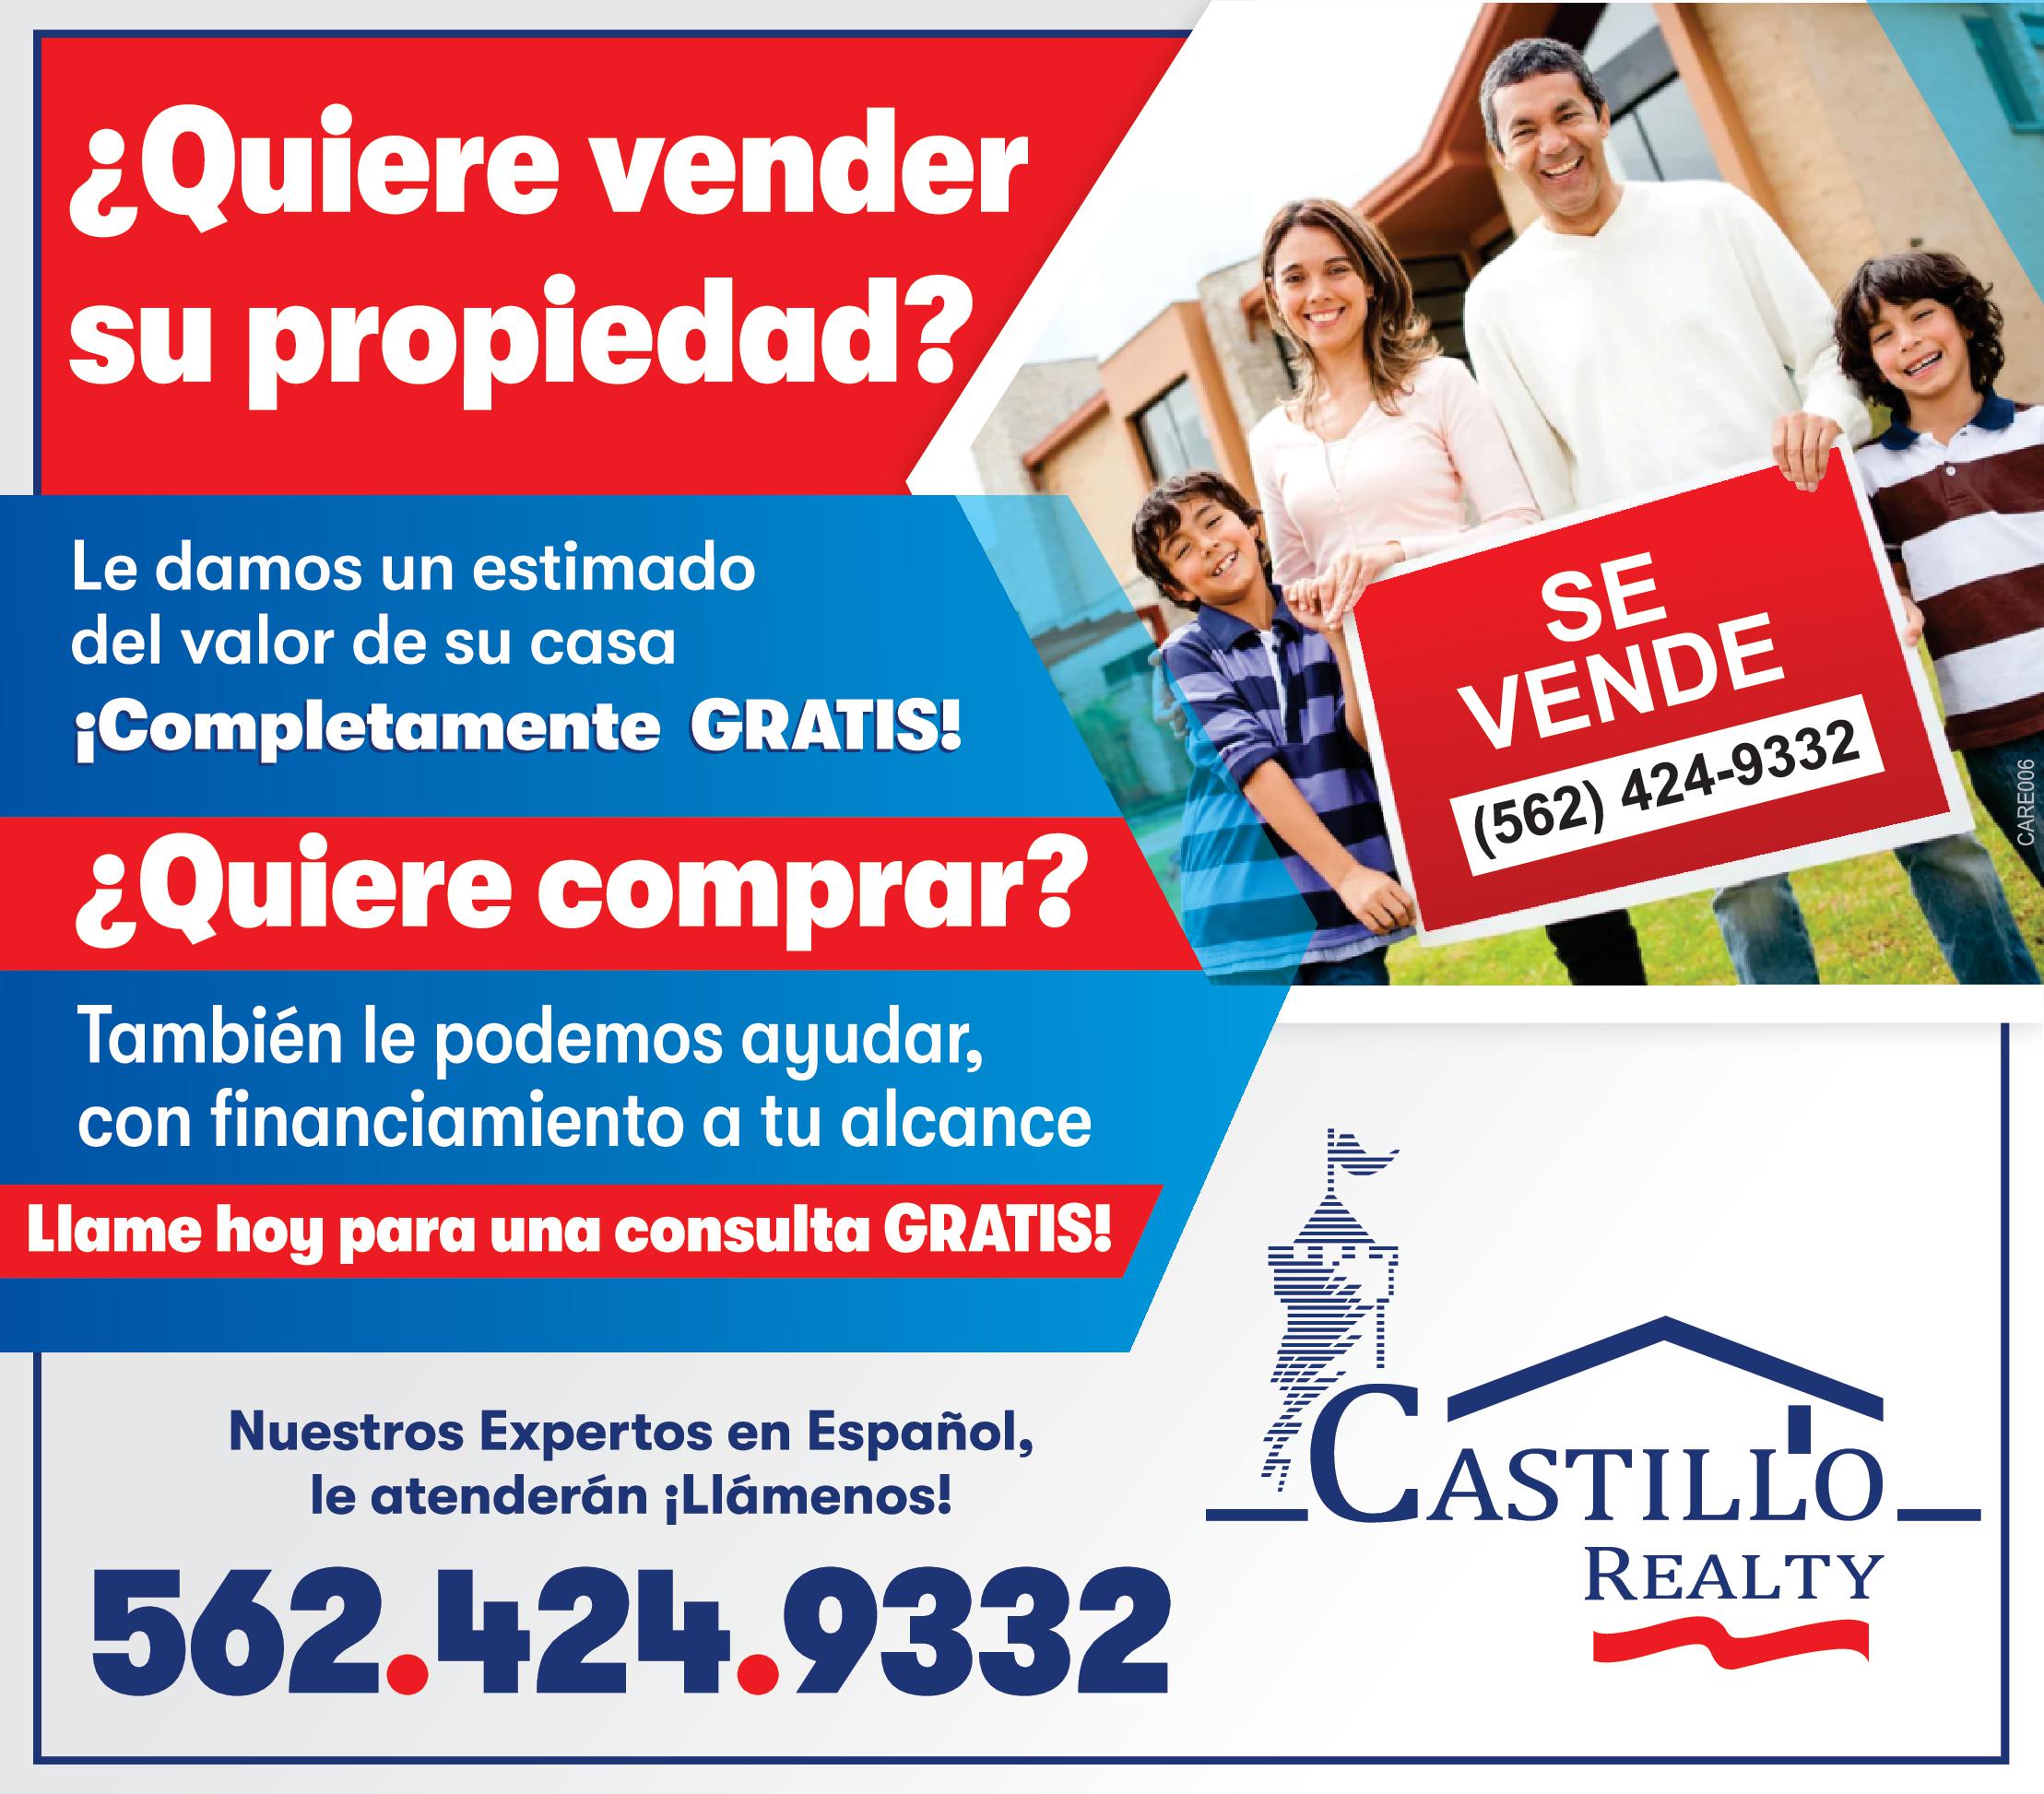 Castillo Realty